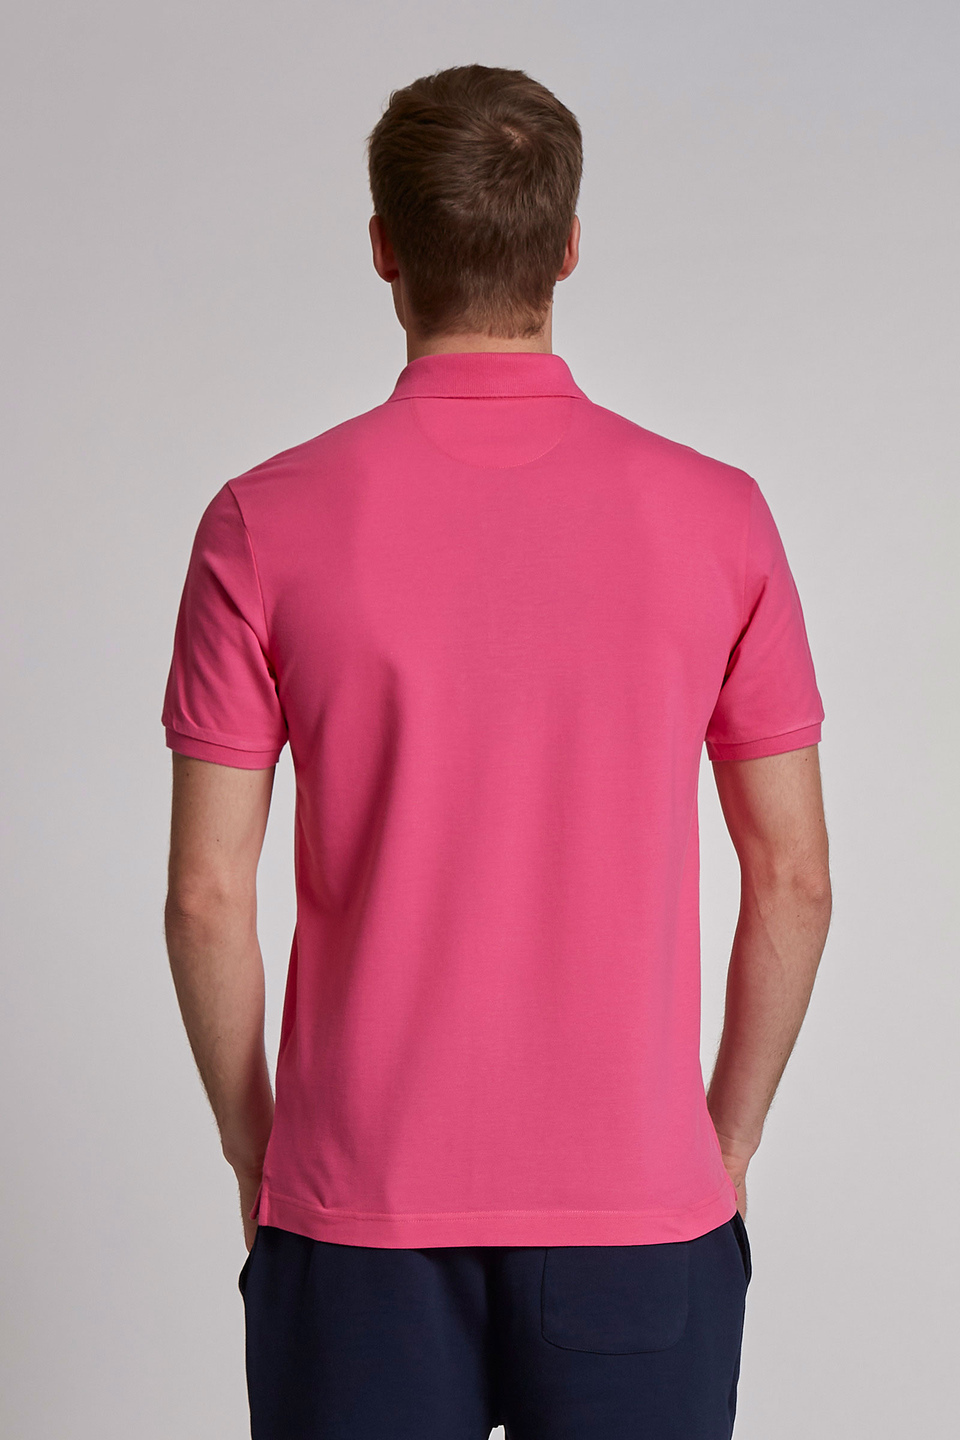 Herren-Poloshirt mit kurzen Ärmeln im regular fit | La Martina - Official Online Shop